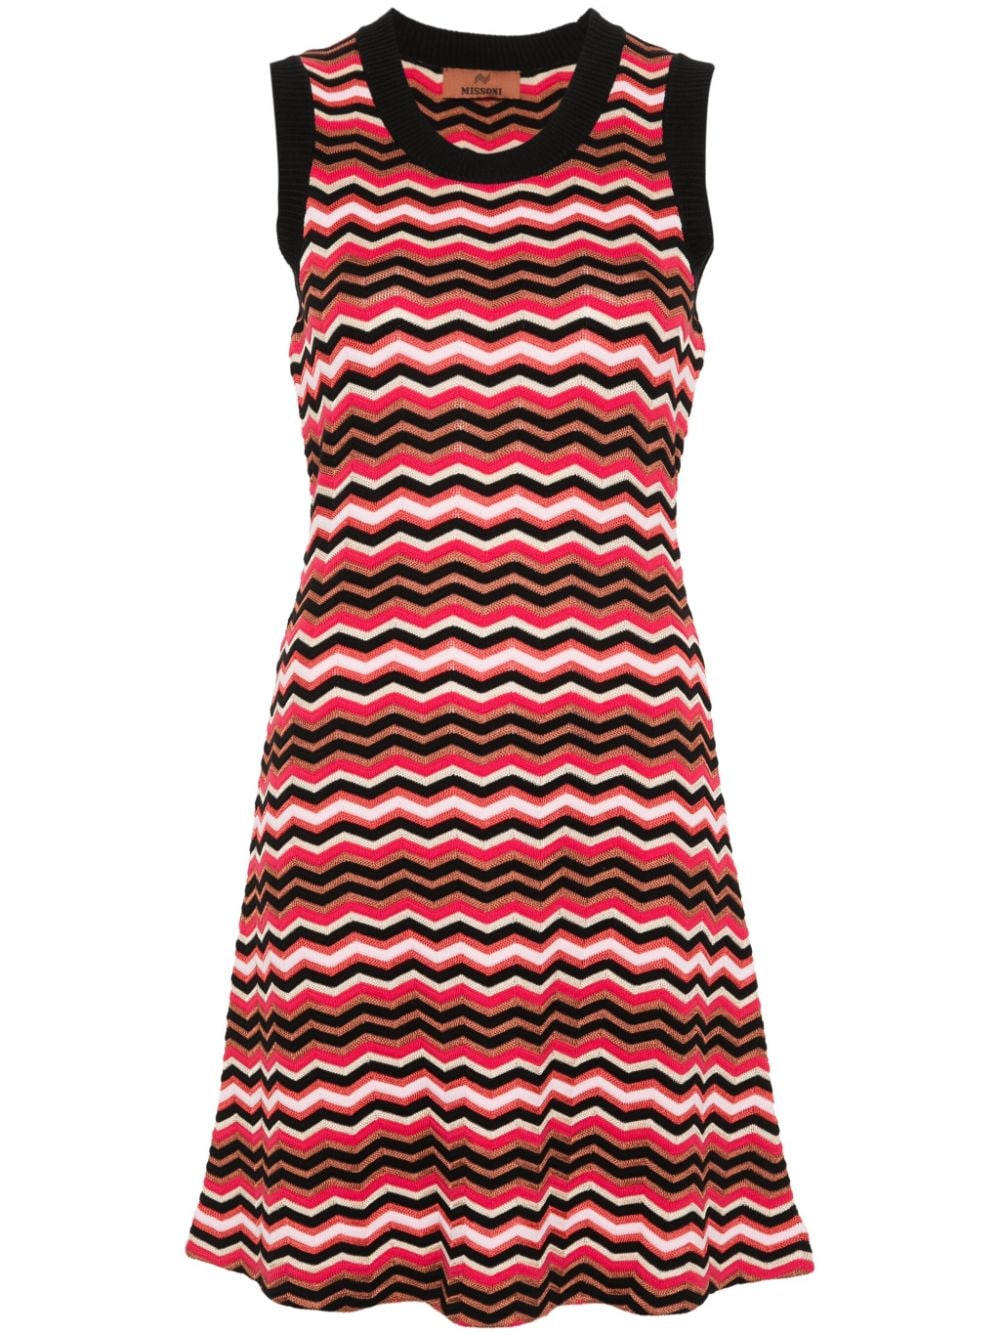 فستان قصير بنقشة زيكزاك - تصميم شيفرون متعدد الألوان بياقة دائرية وبدون أكمام مع تنورة واسعة